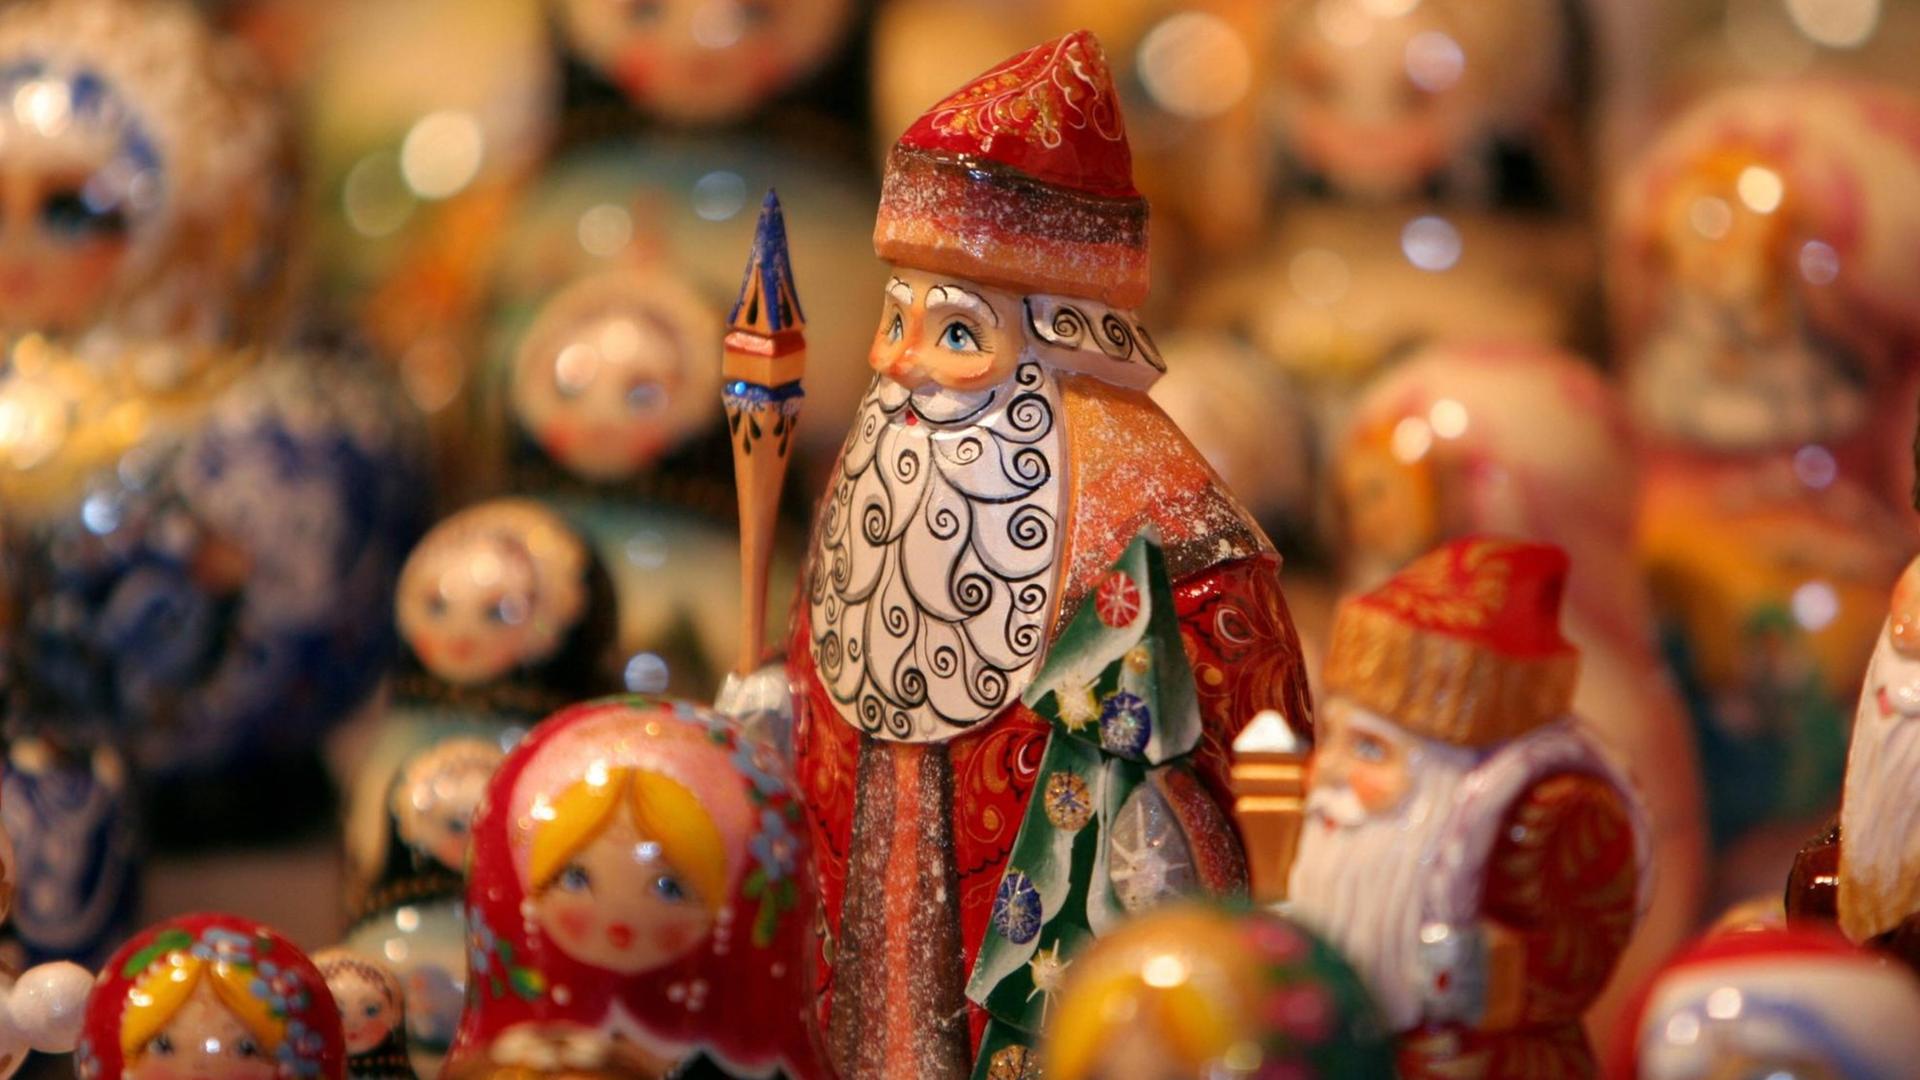 Traditionelle russische Weihnachtsfiguren in Nahaufnahme.